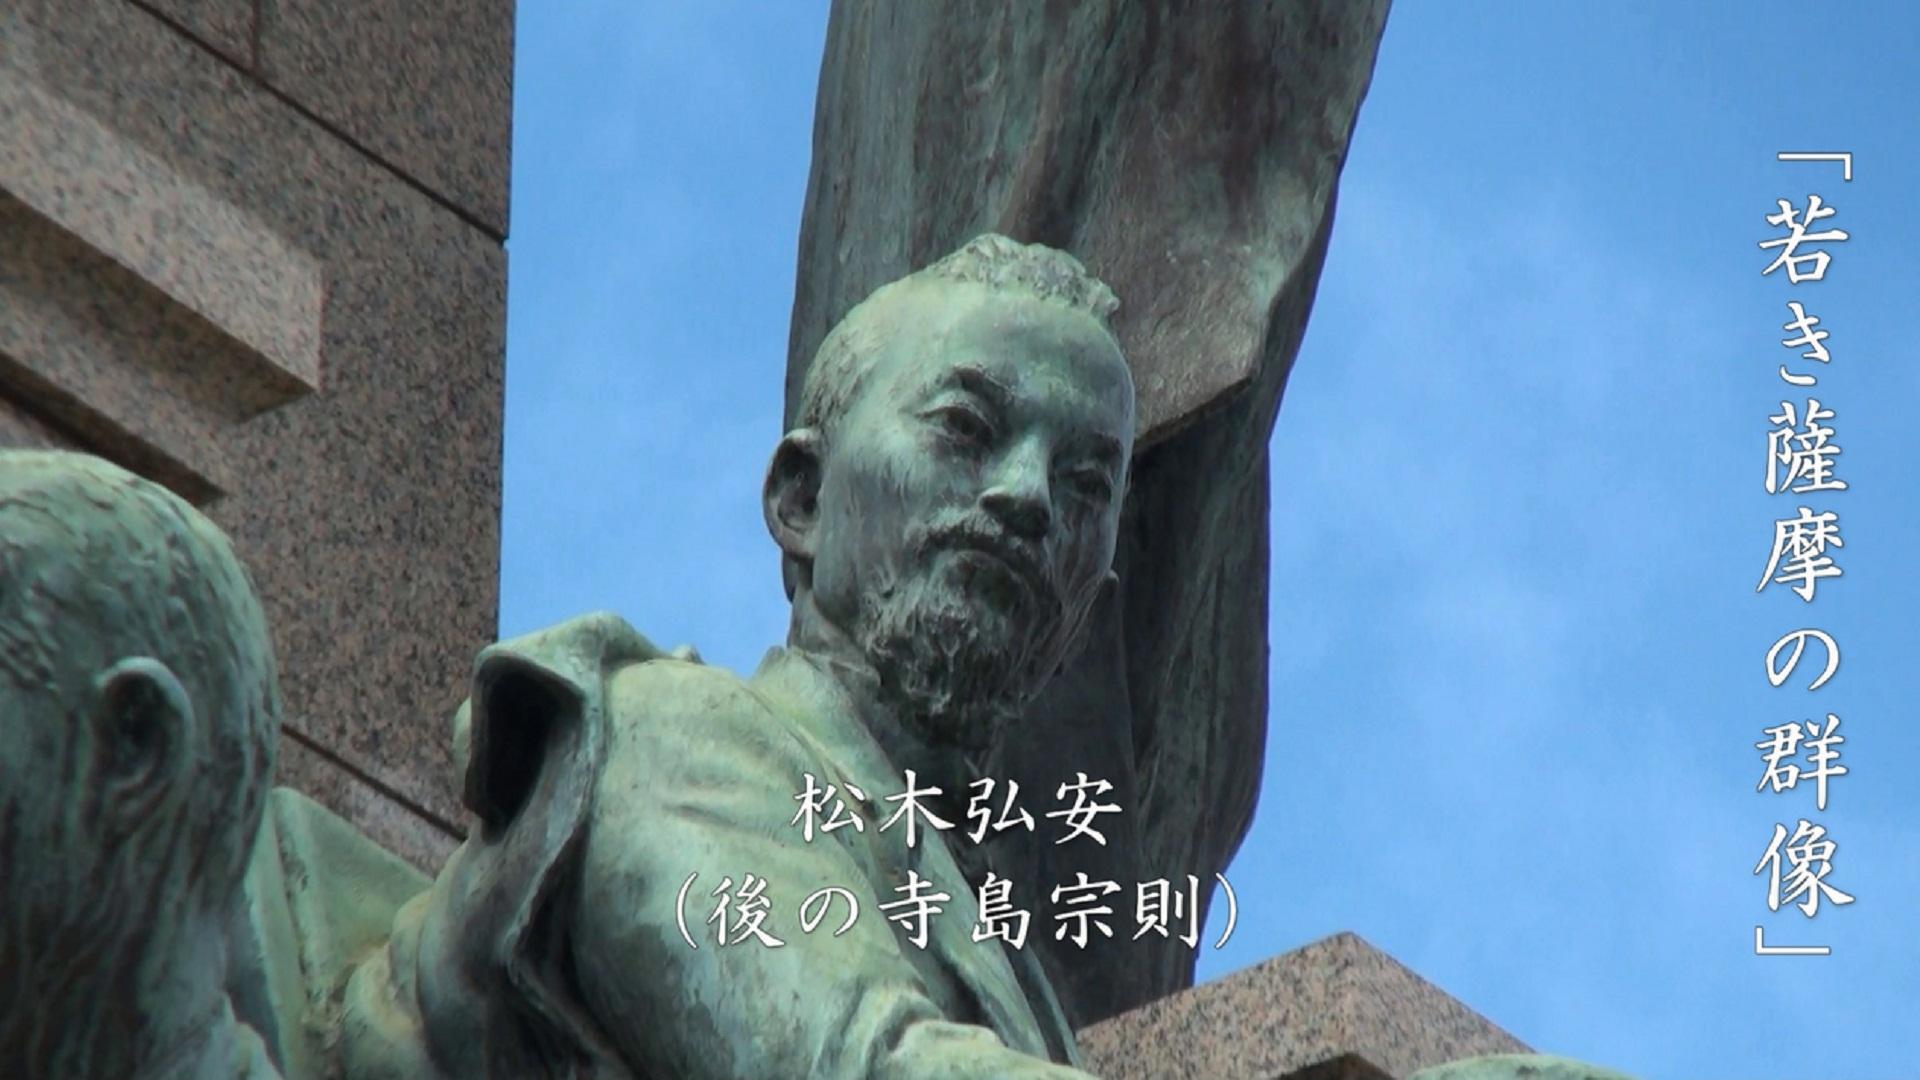 阿久根の偉人である寺島宗則の銅像が映し出されているふるさとCMの画像